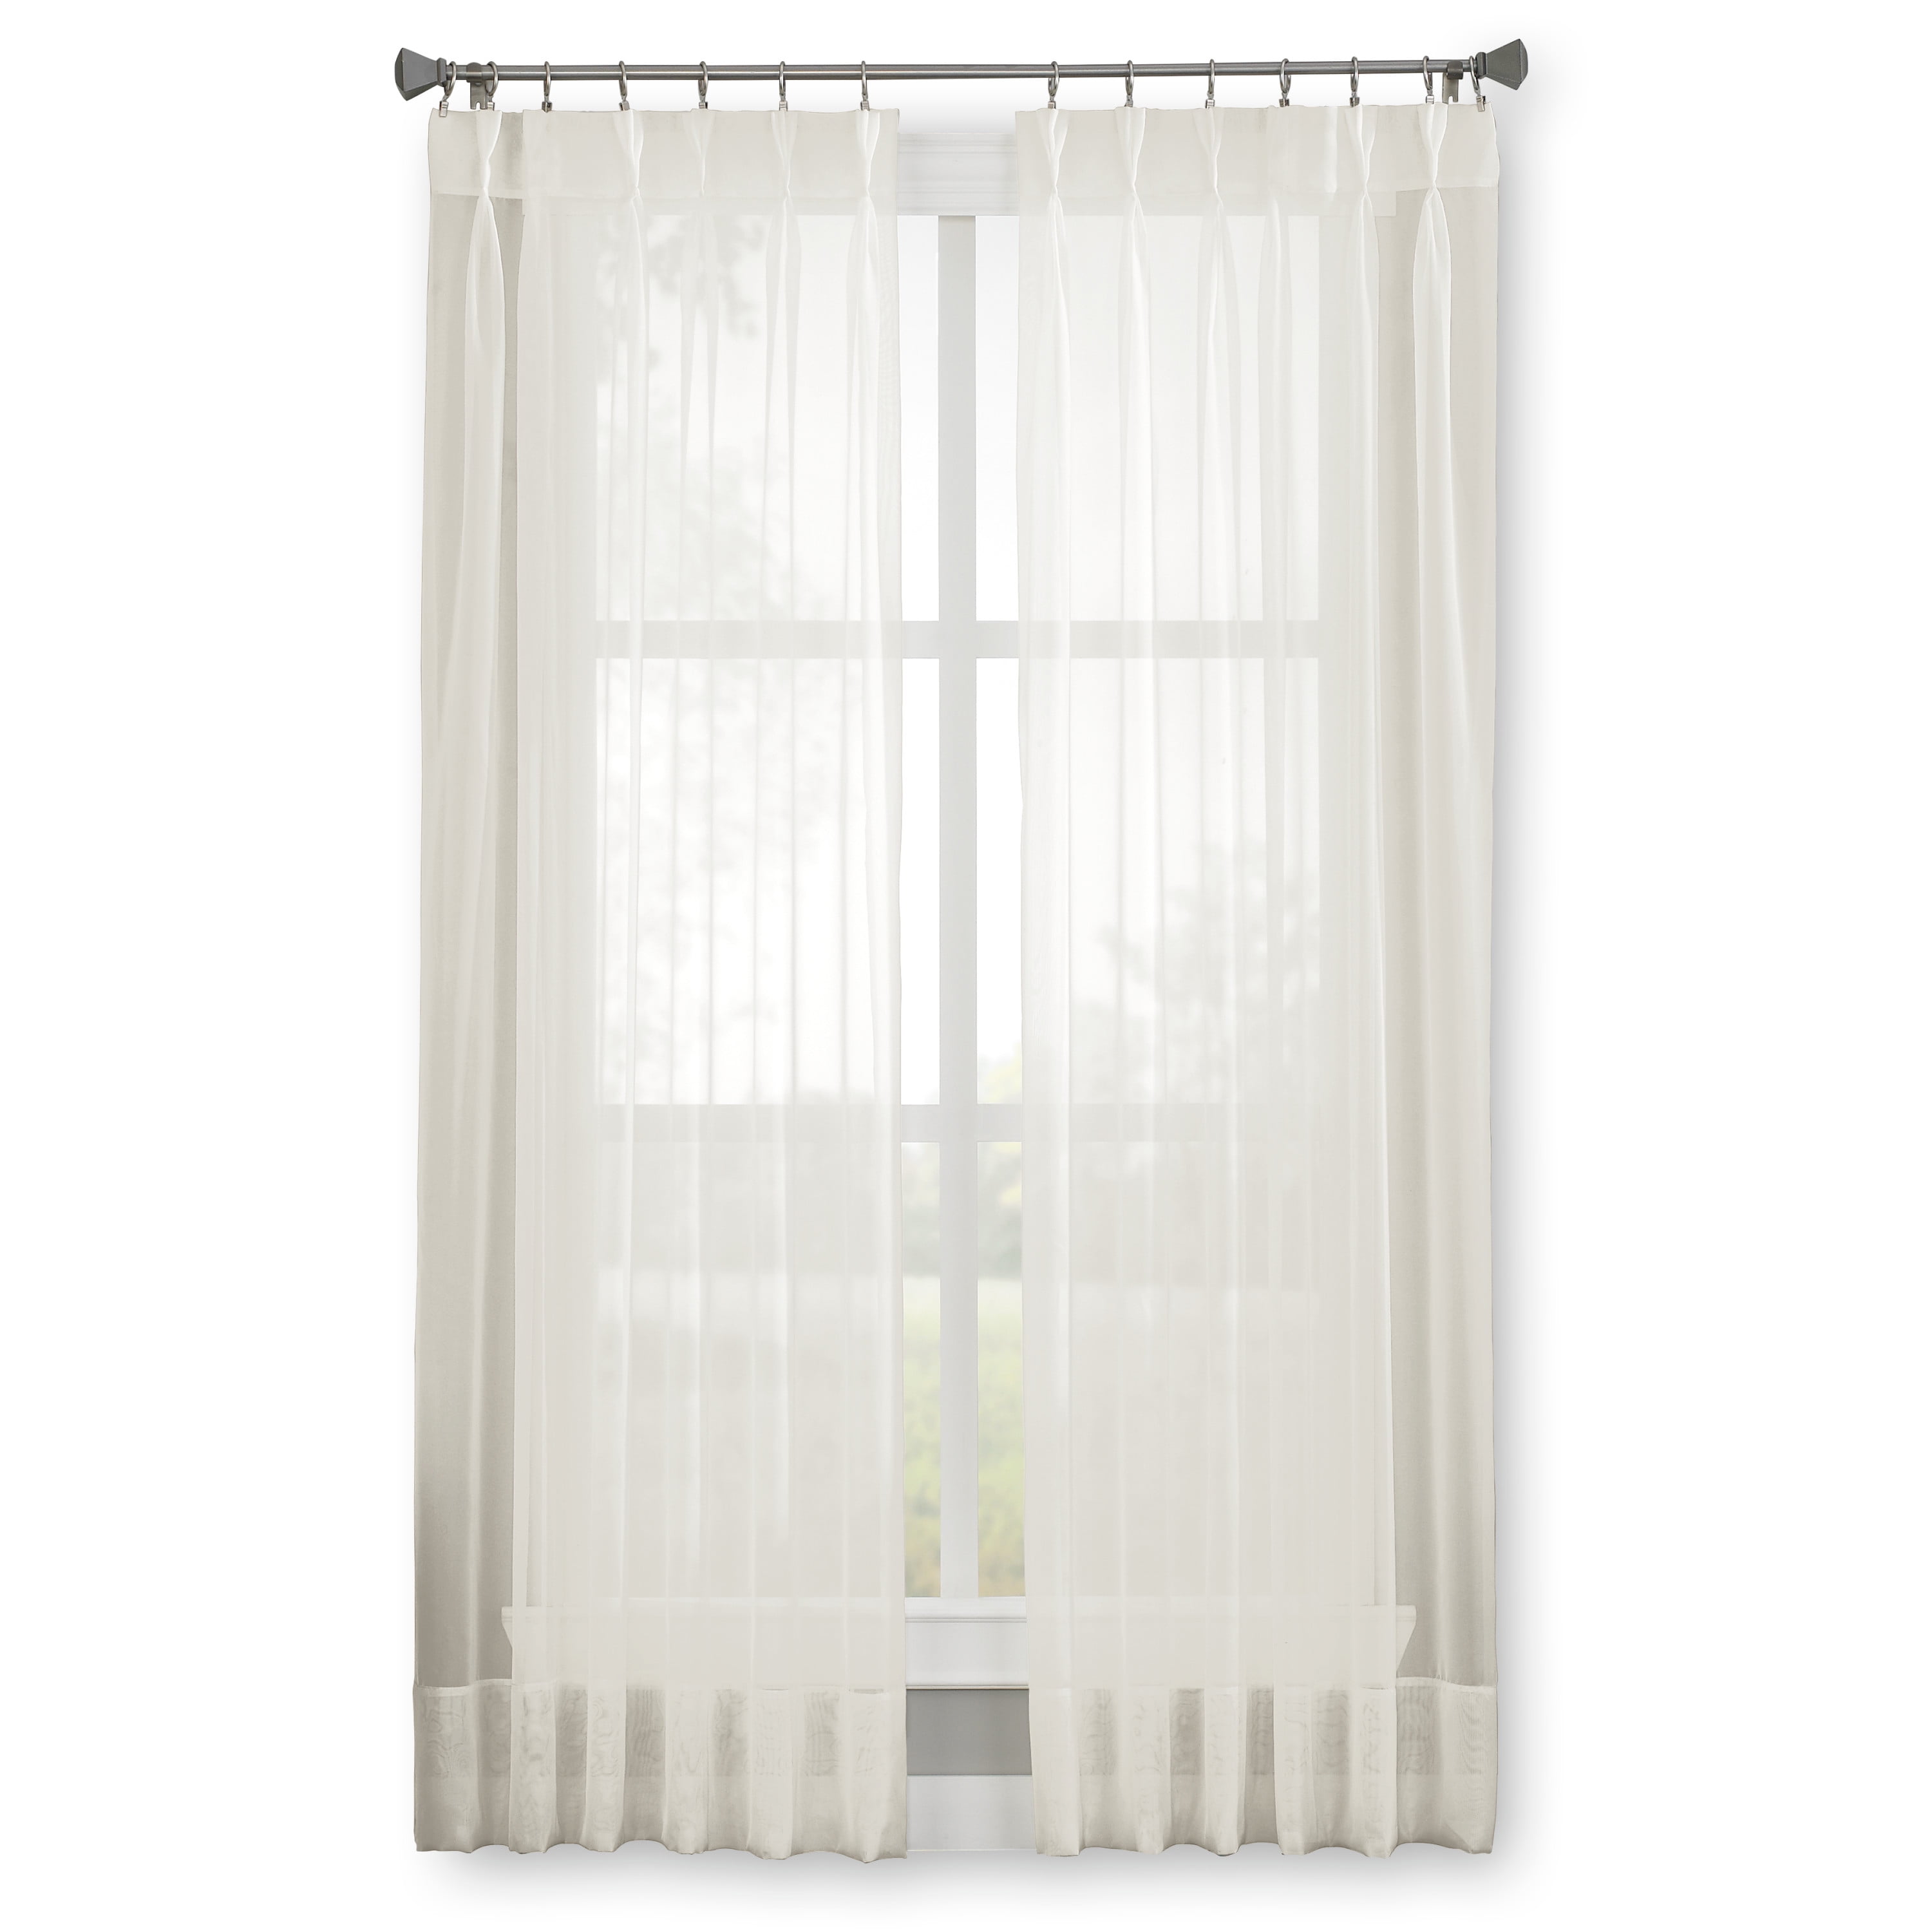  Honbay 200pcs White Plastic Curtain Hooks for Window Curtain,  Door Curtain and Shower Curtain : Home & Kitchen